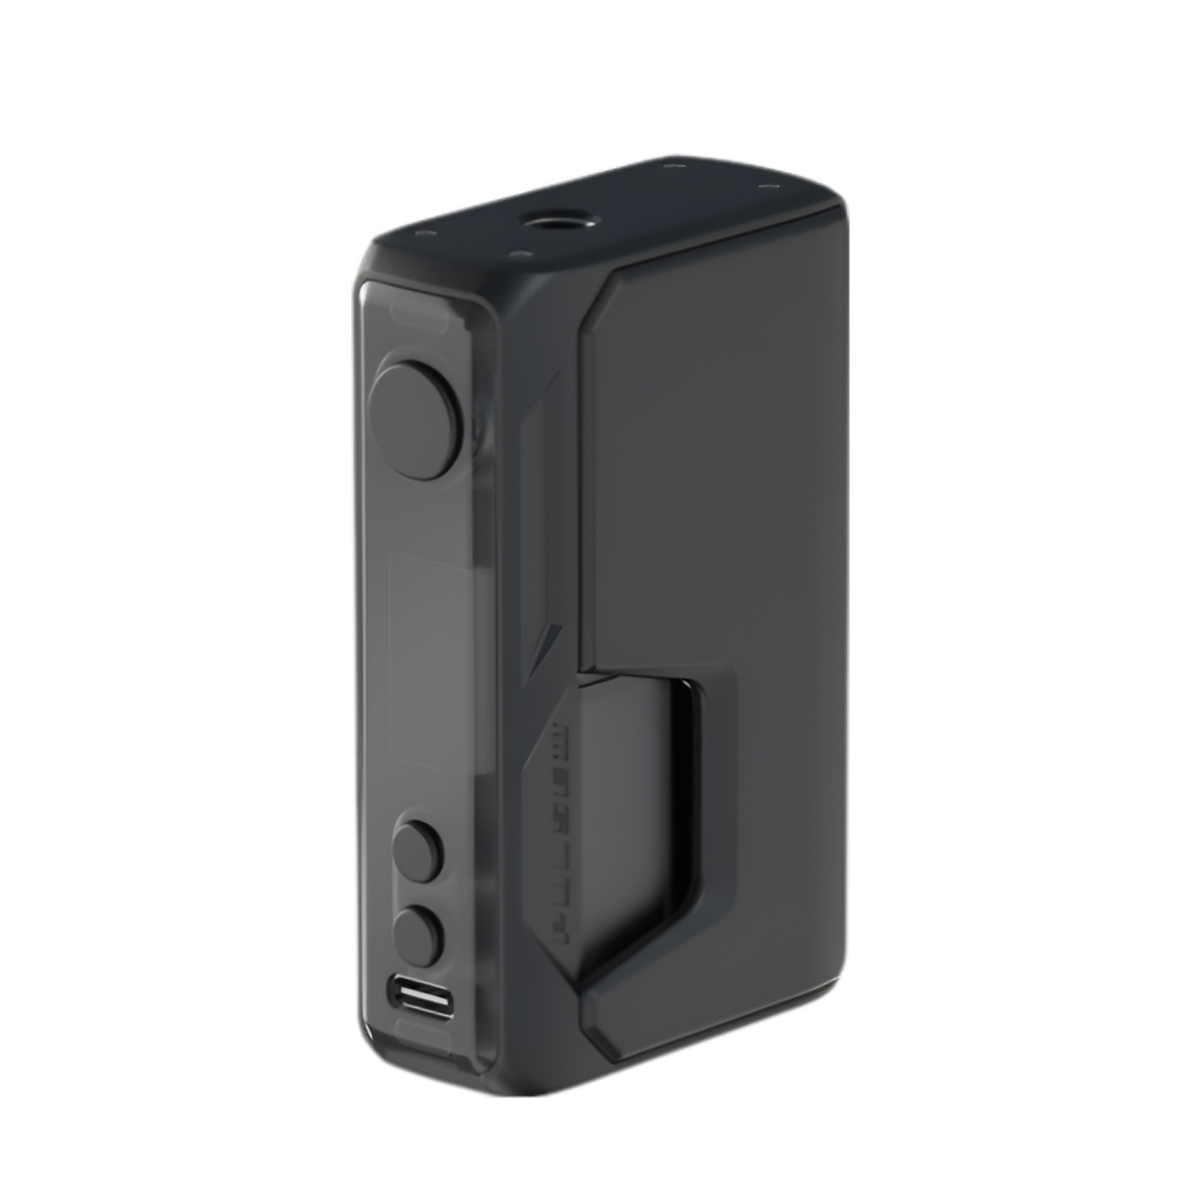 Vandy Vape Pulse V3 Box-Mod Kit Black  